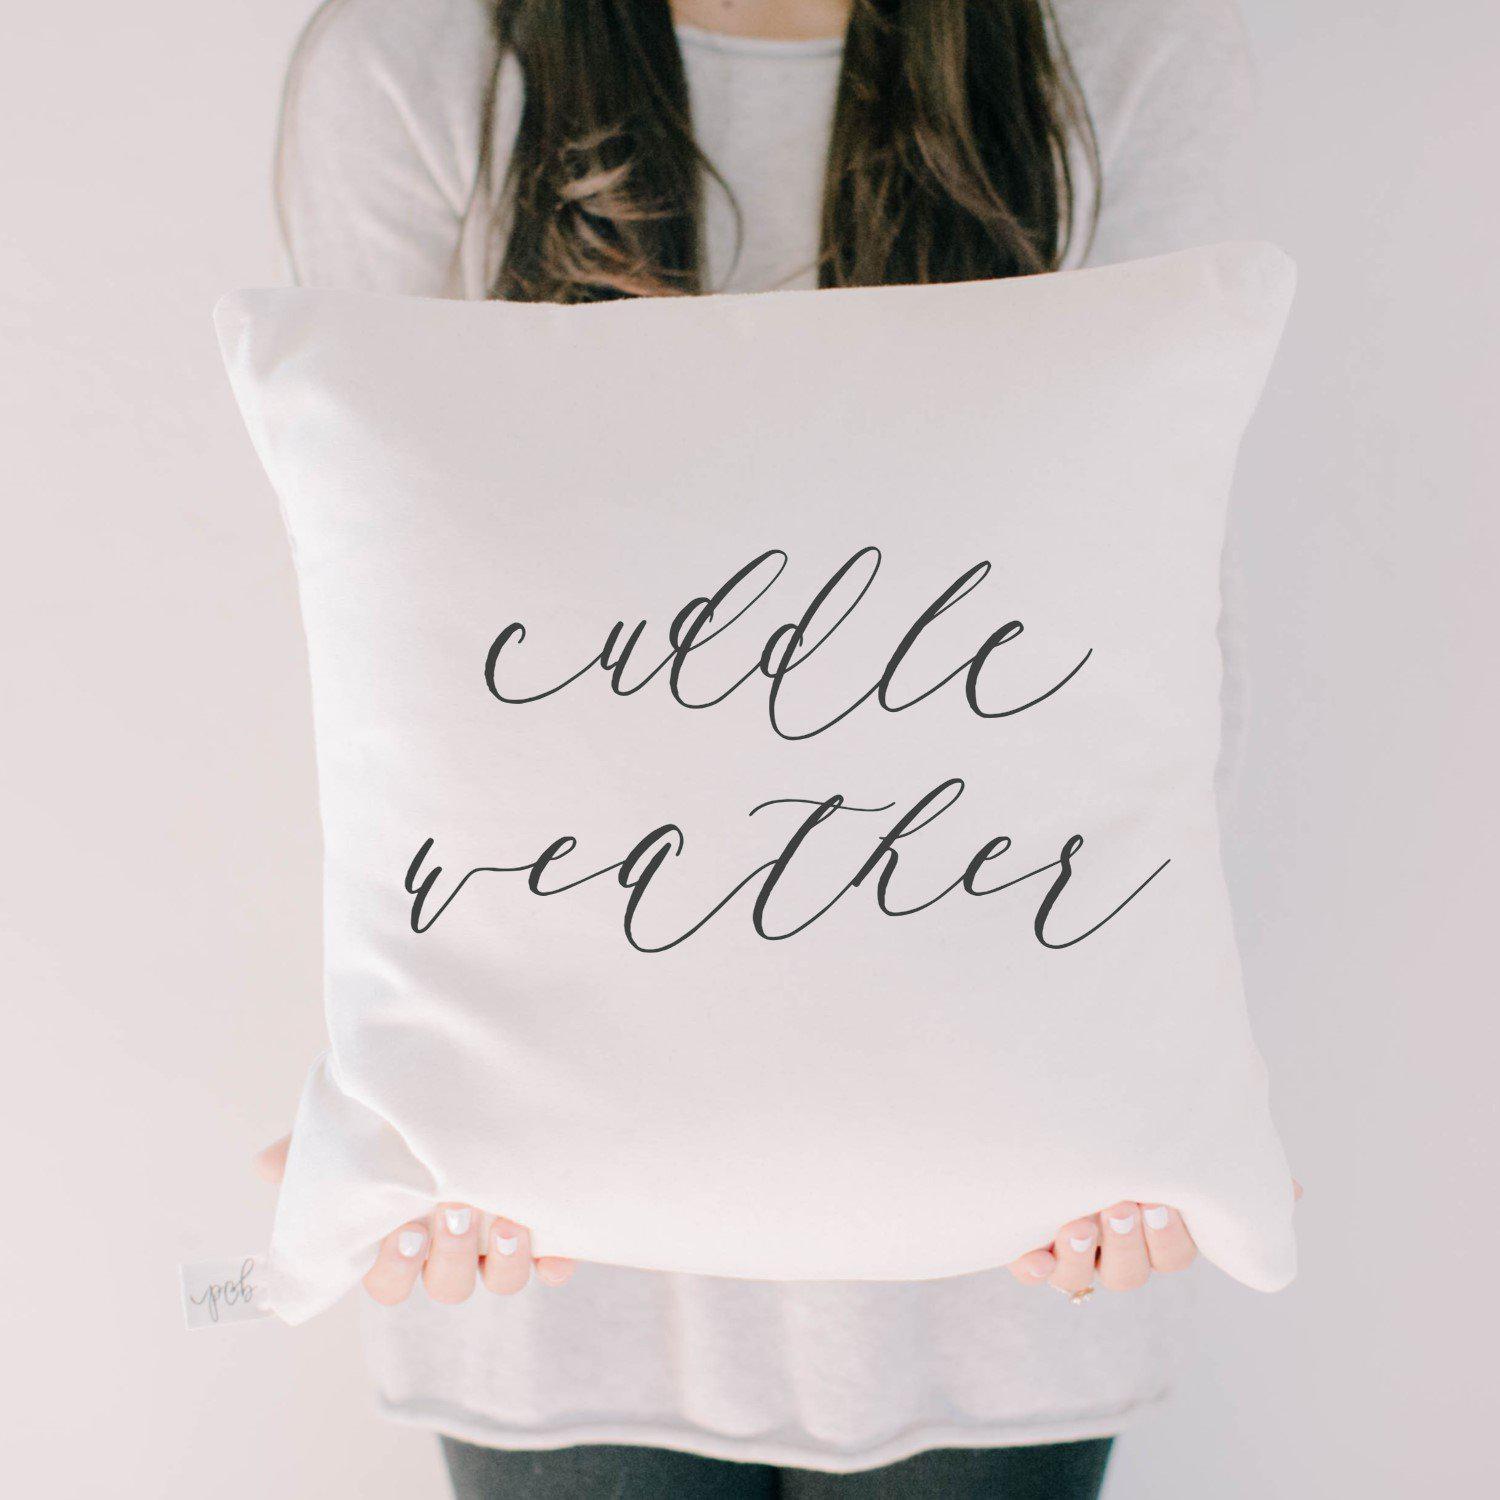 "Cuddle Weather" Script Pillow | Lifestyle Details